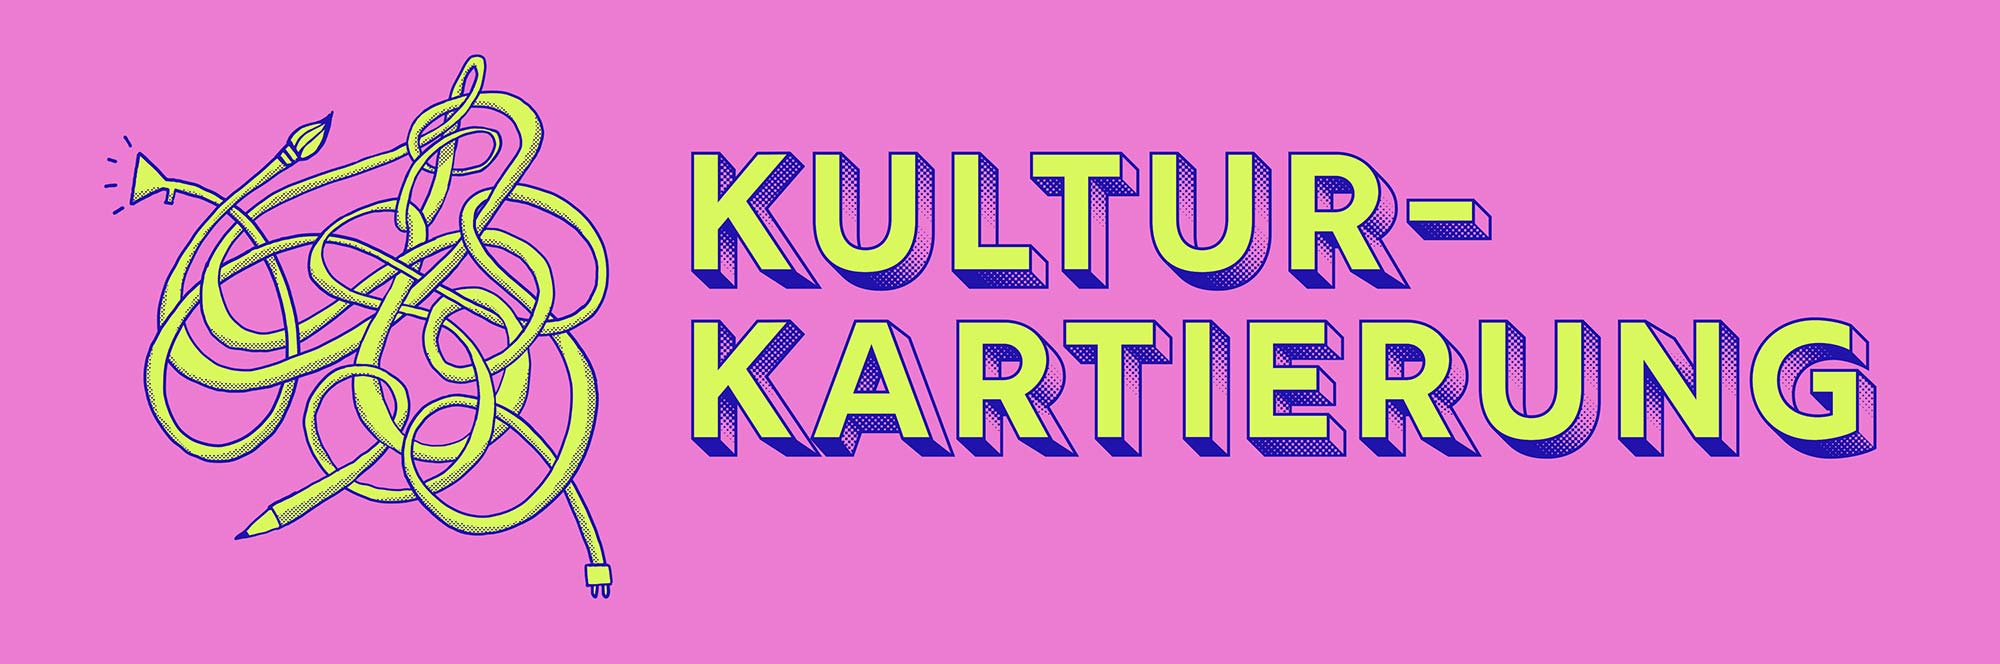 kulturkartierung-banner-illu-freiburg-e-v